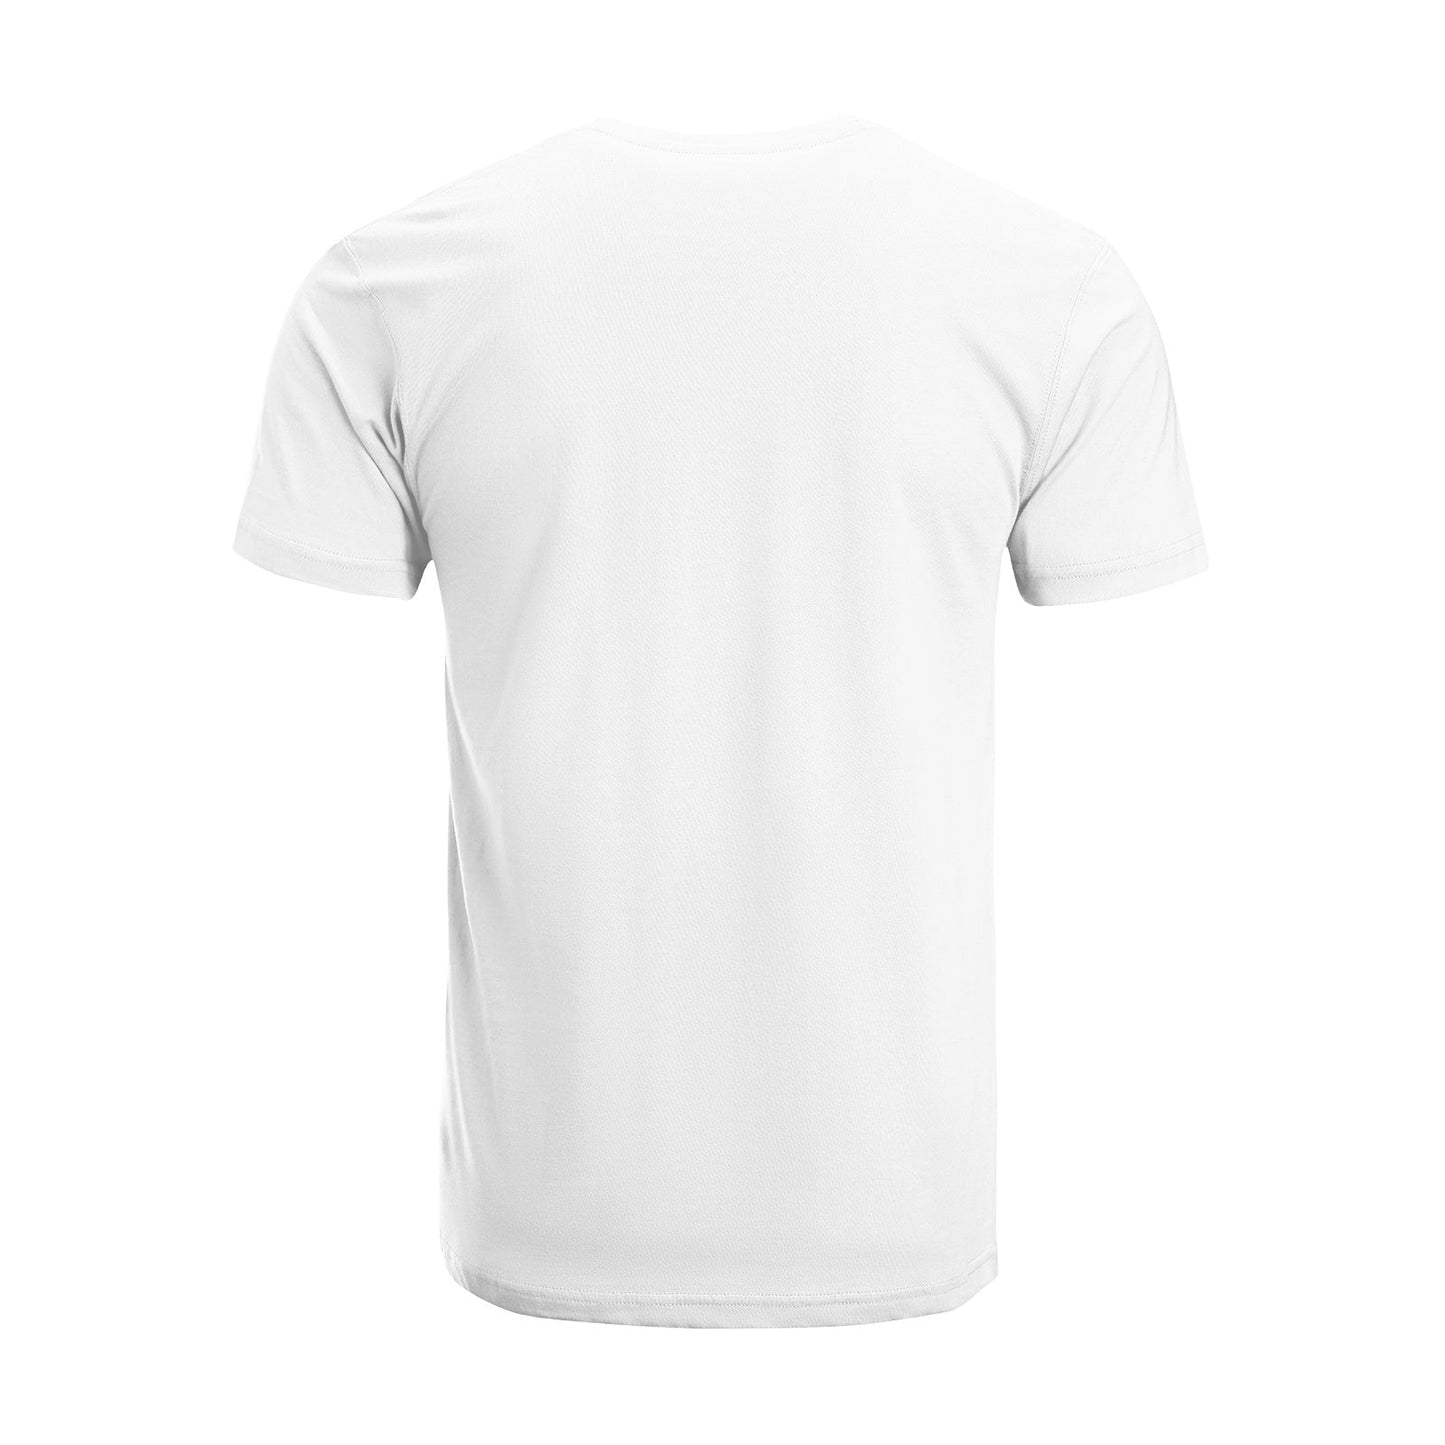 Unisex Short Sleeve Crew Neck Cotton Jersey T-Shirt TRUCK 18